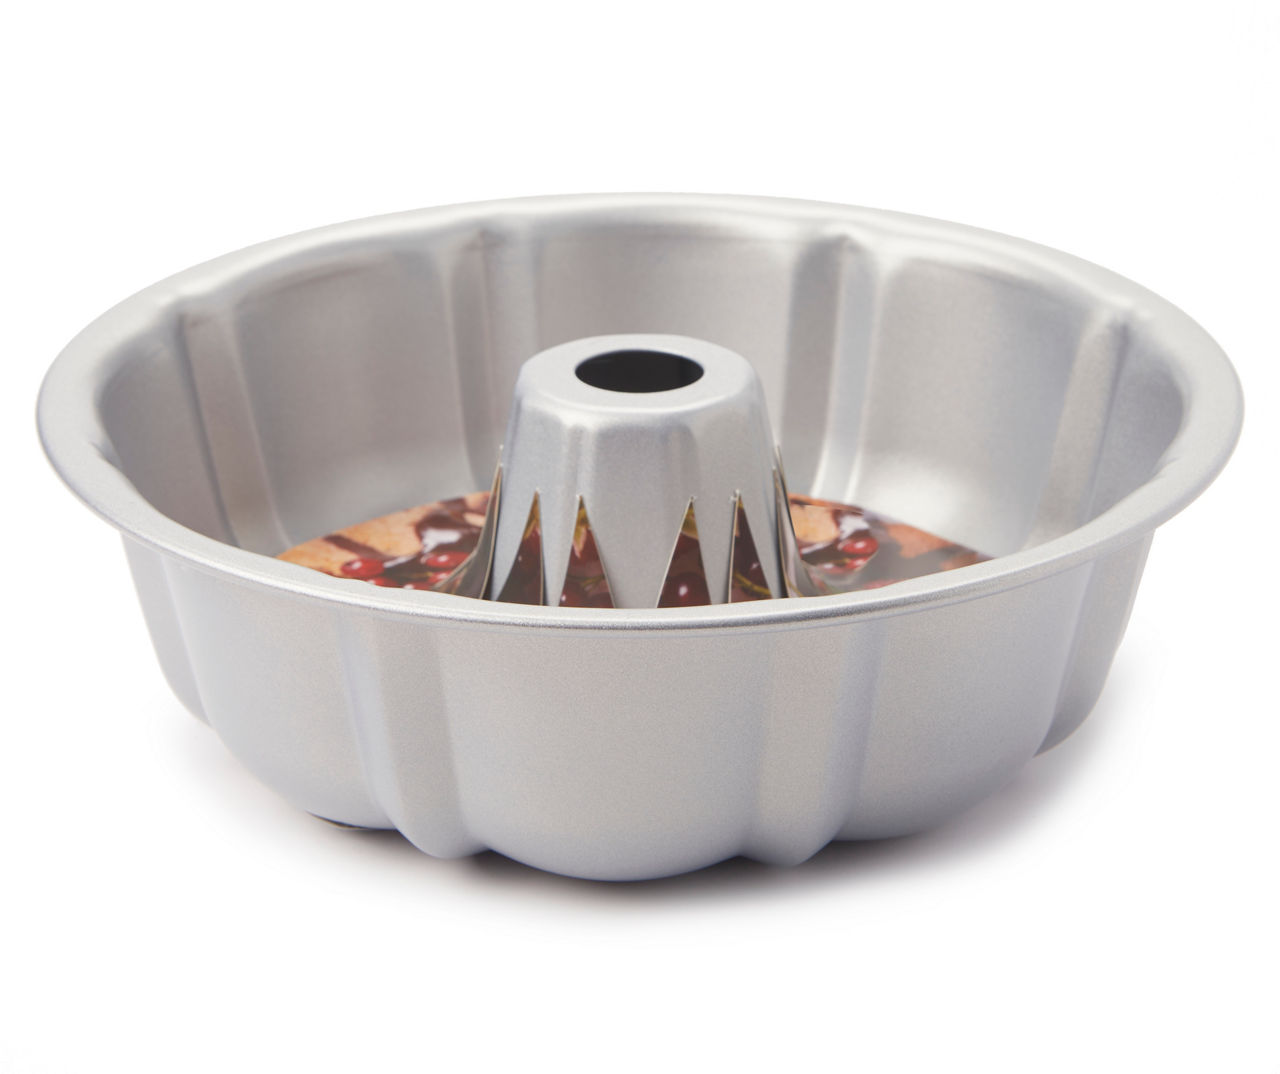 Silicone Coffin Cake Pan (11.5 x 6.75) - WebstaurantStore